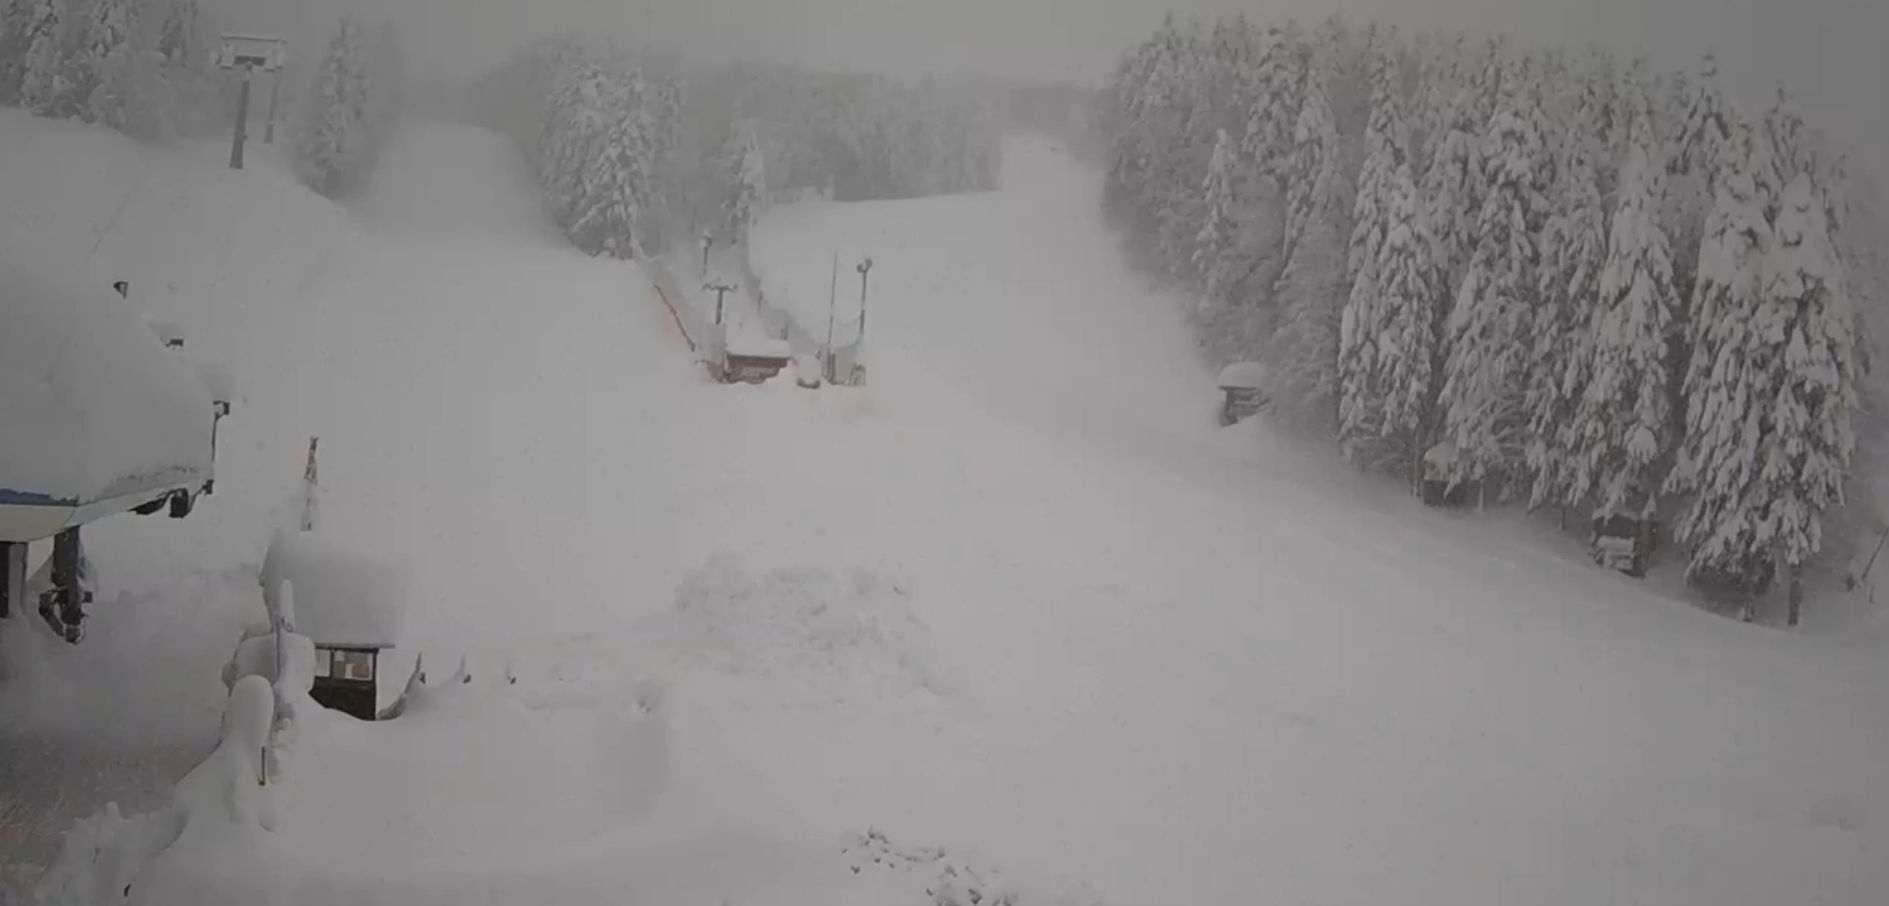 Het skigebied is dicht maar ligt bedolven onder een pak sneeuw